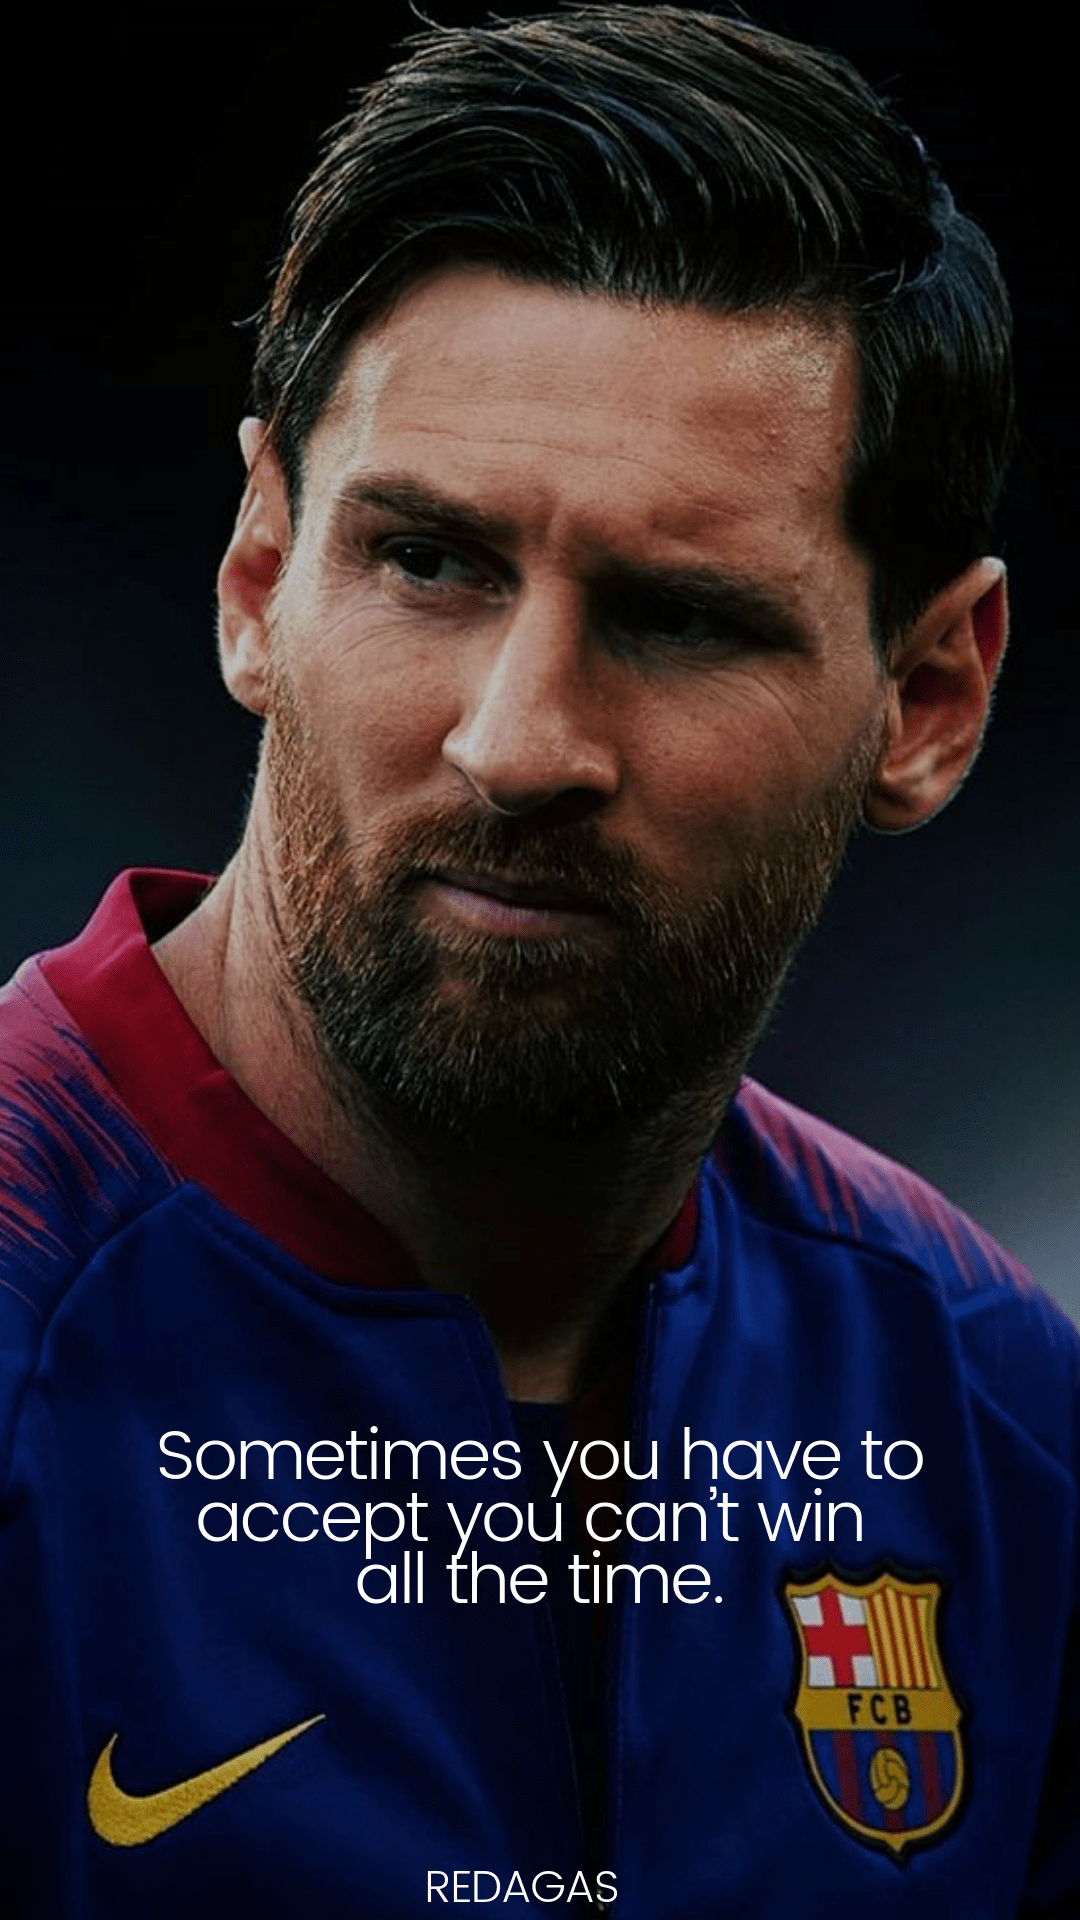 Các hình nền với câu nói của Messi là điều tuyệt vời để làm nền cho máy tính của bạn. Hãy xem ngay những hình nền này để cảm nhận sự độc đáo và bắt mắt!